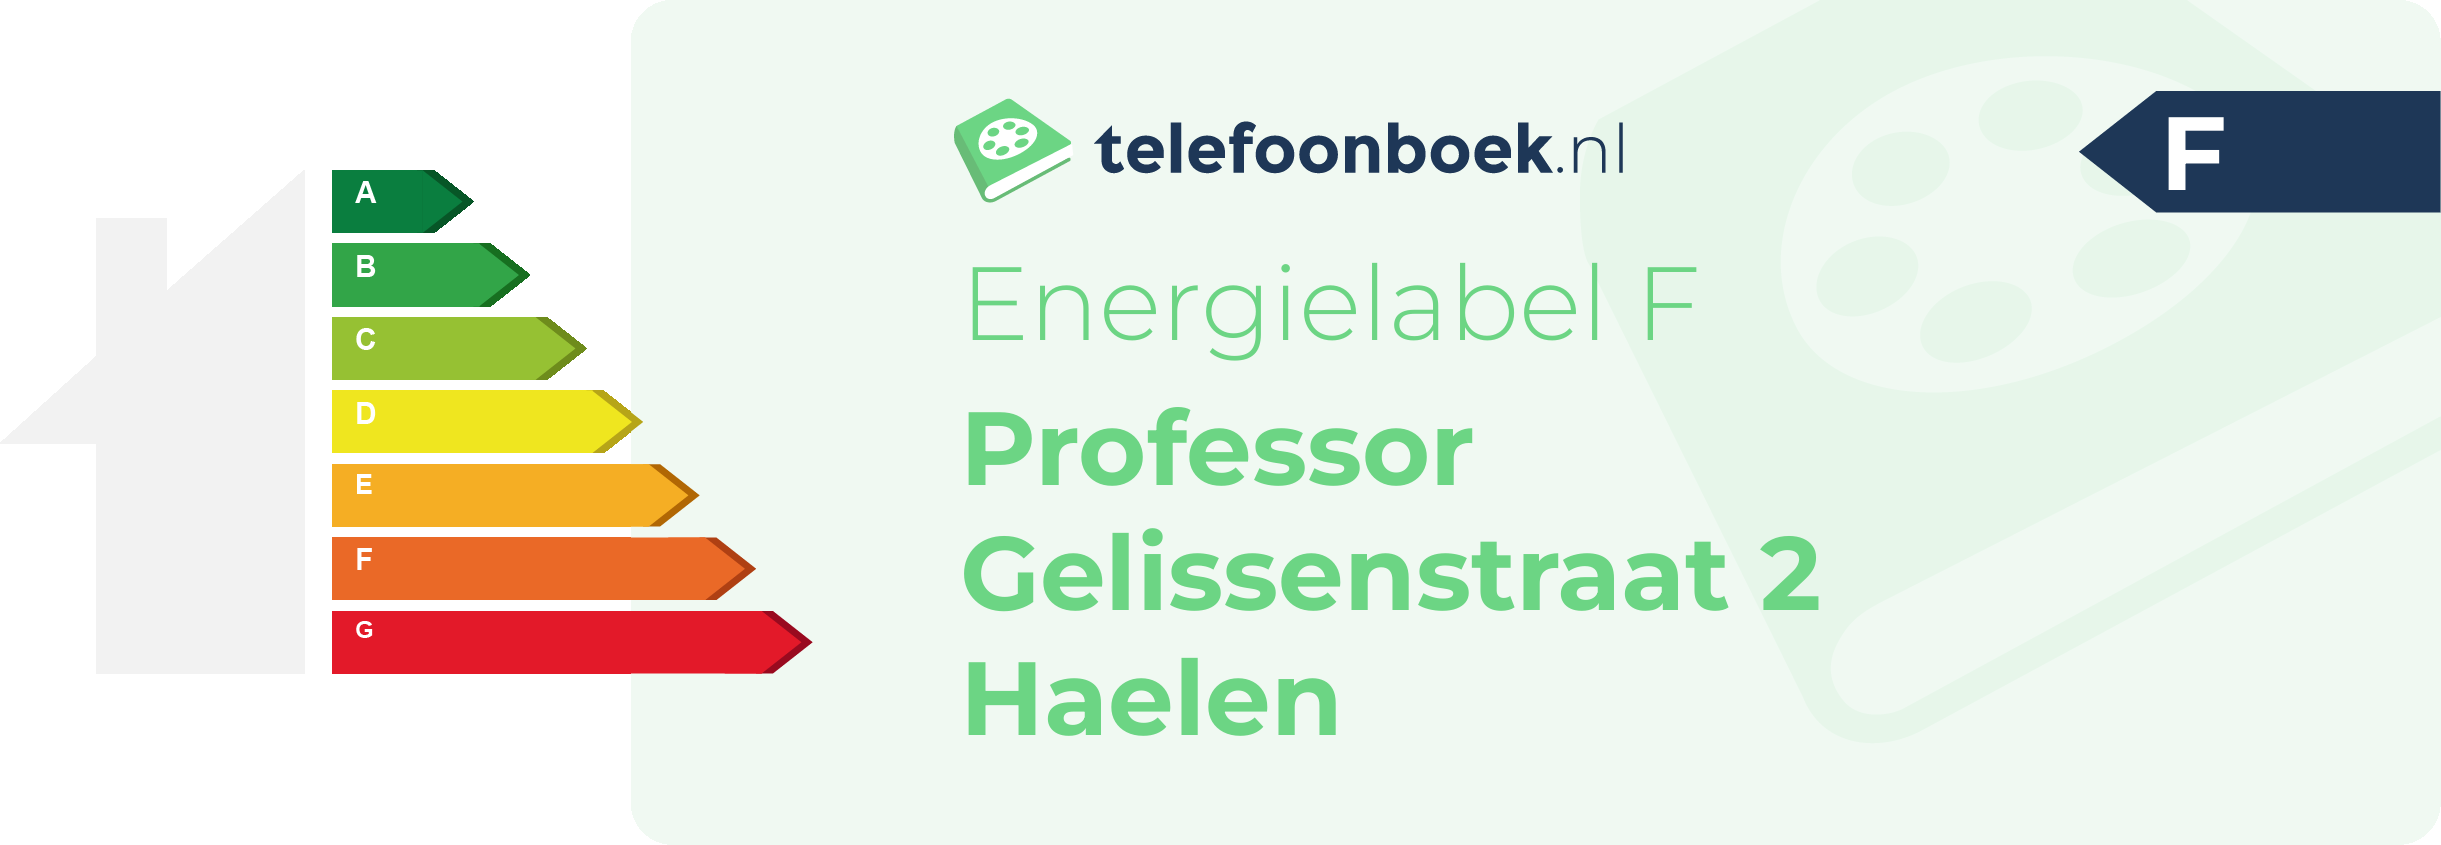 Energielabel Professor Gelissenstraat 2 Haelen